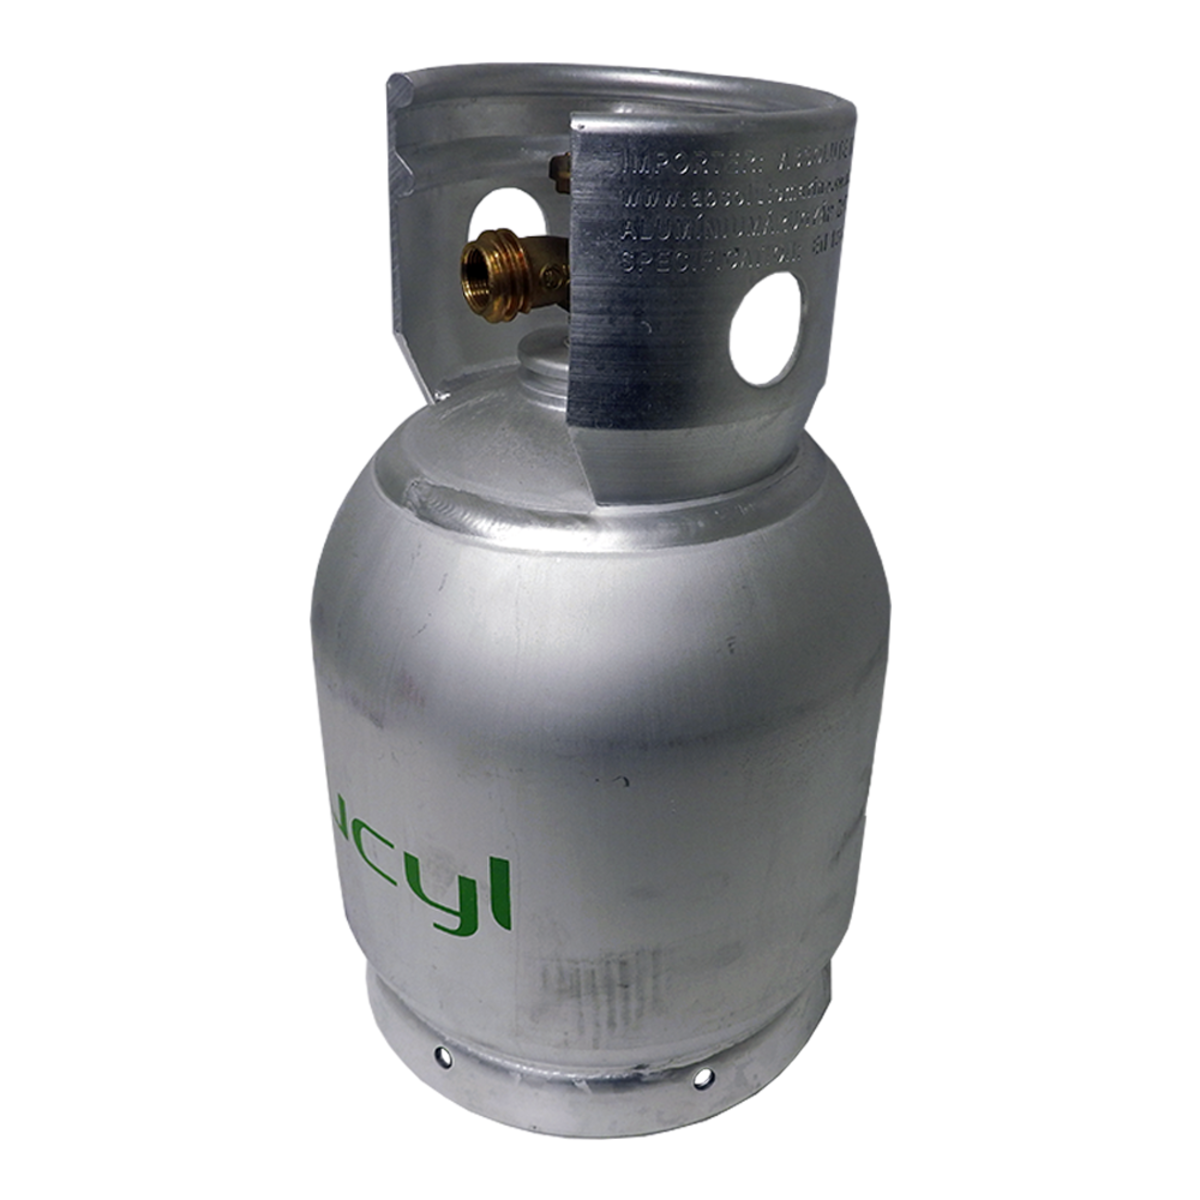 5Kg Alloy Gas Cylinder/Bottle | Smart Marine